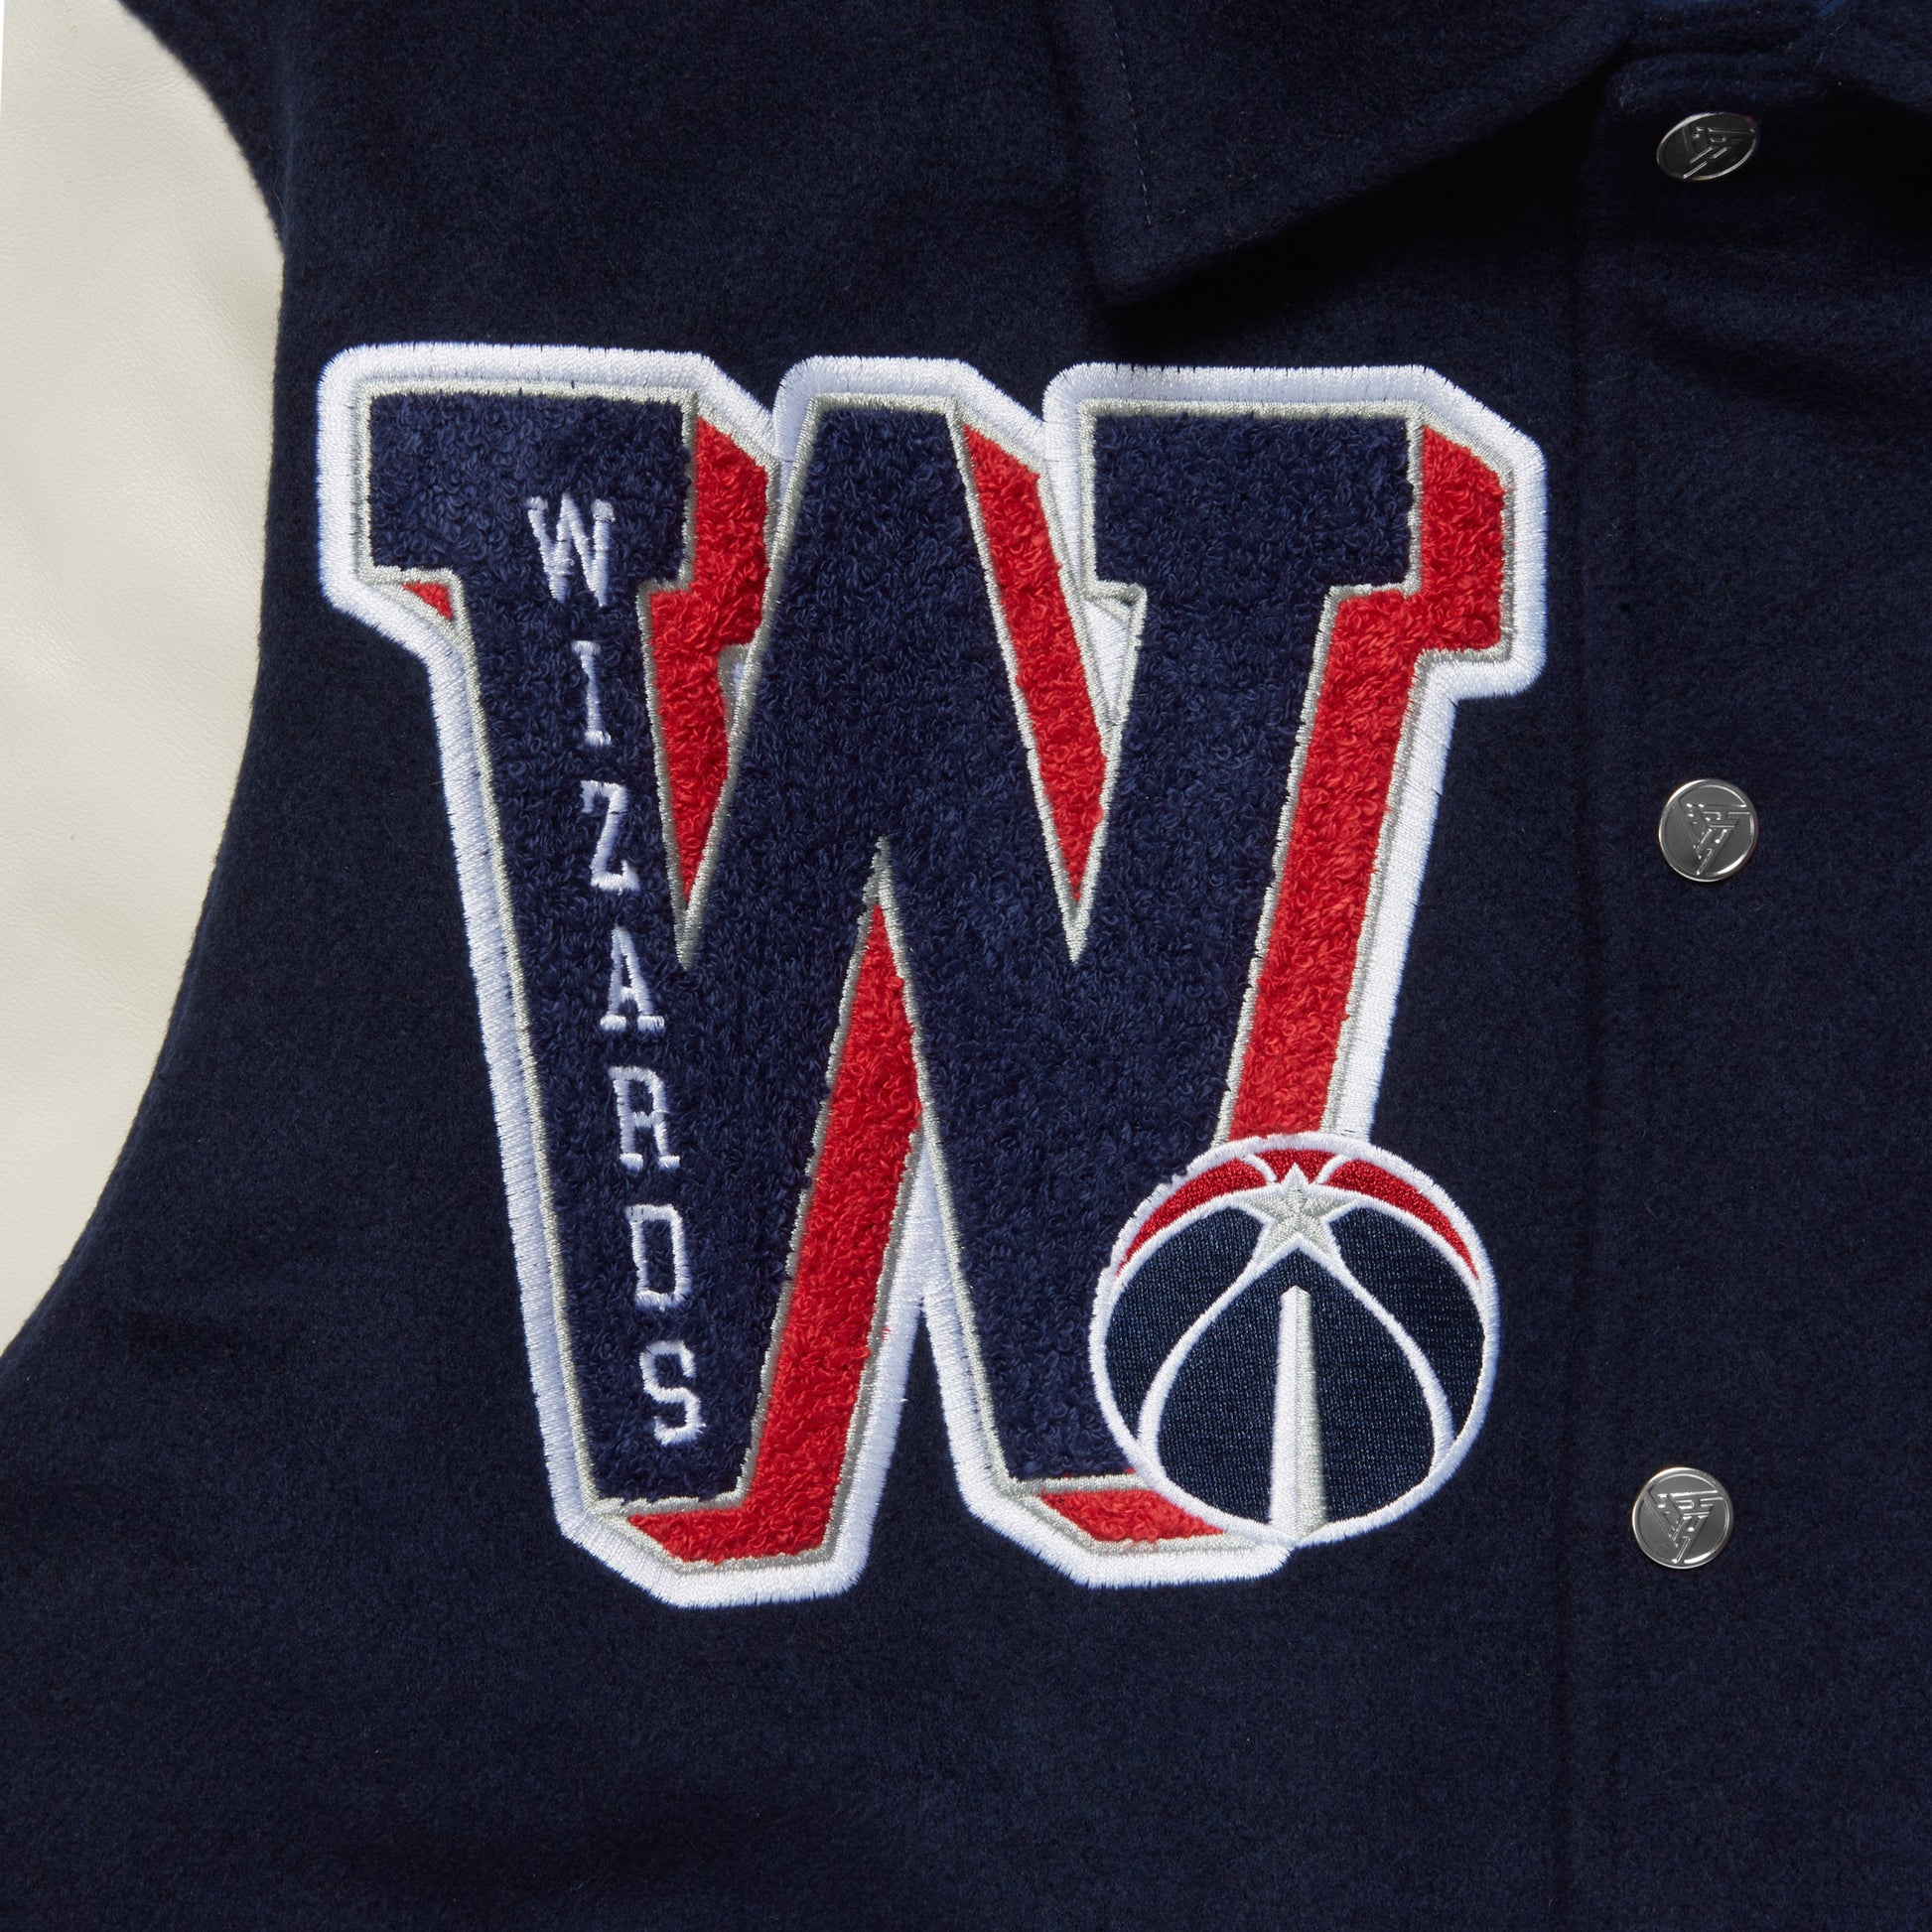 Maker of Jacket Fashion Jackets Washington Wizards Pink Varsity Baseball